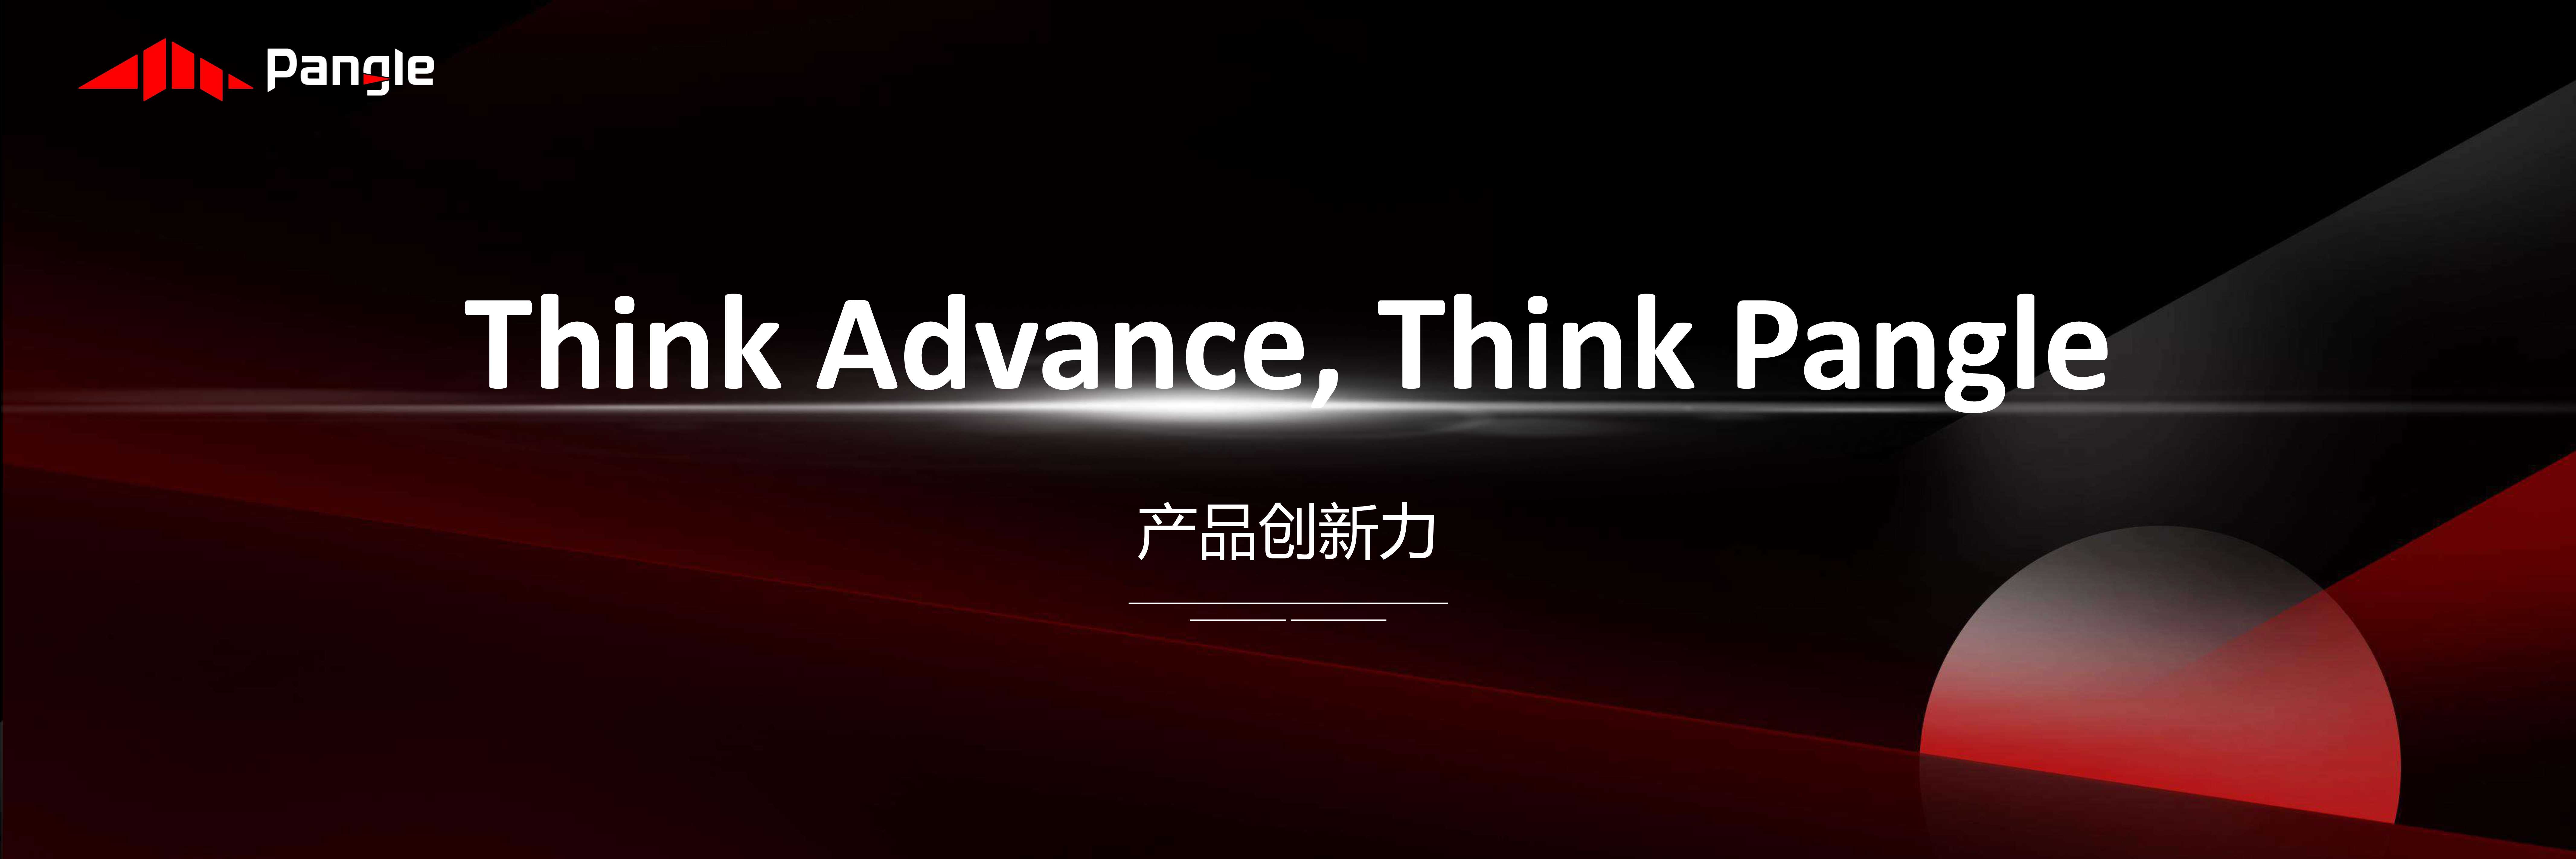 尹晓诗-Think Advance, Think Pangle-2021.07-16页